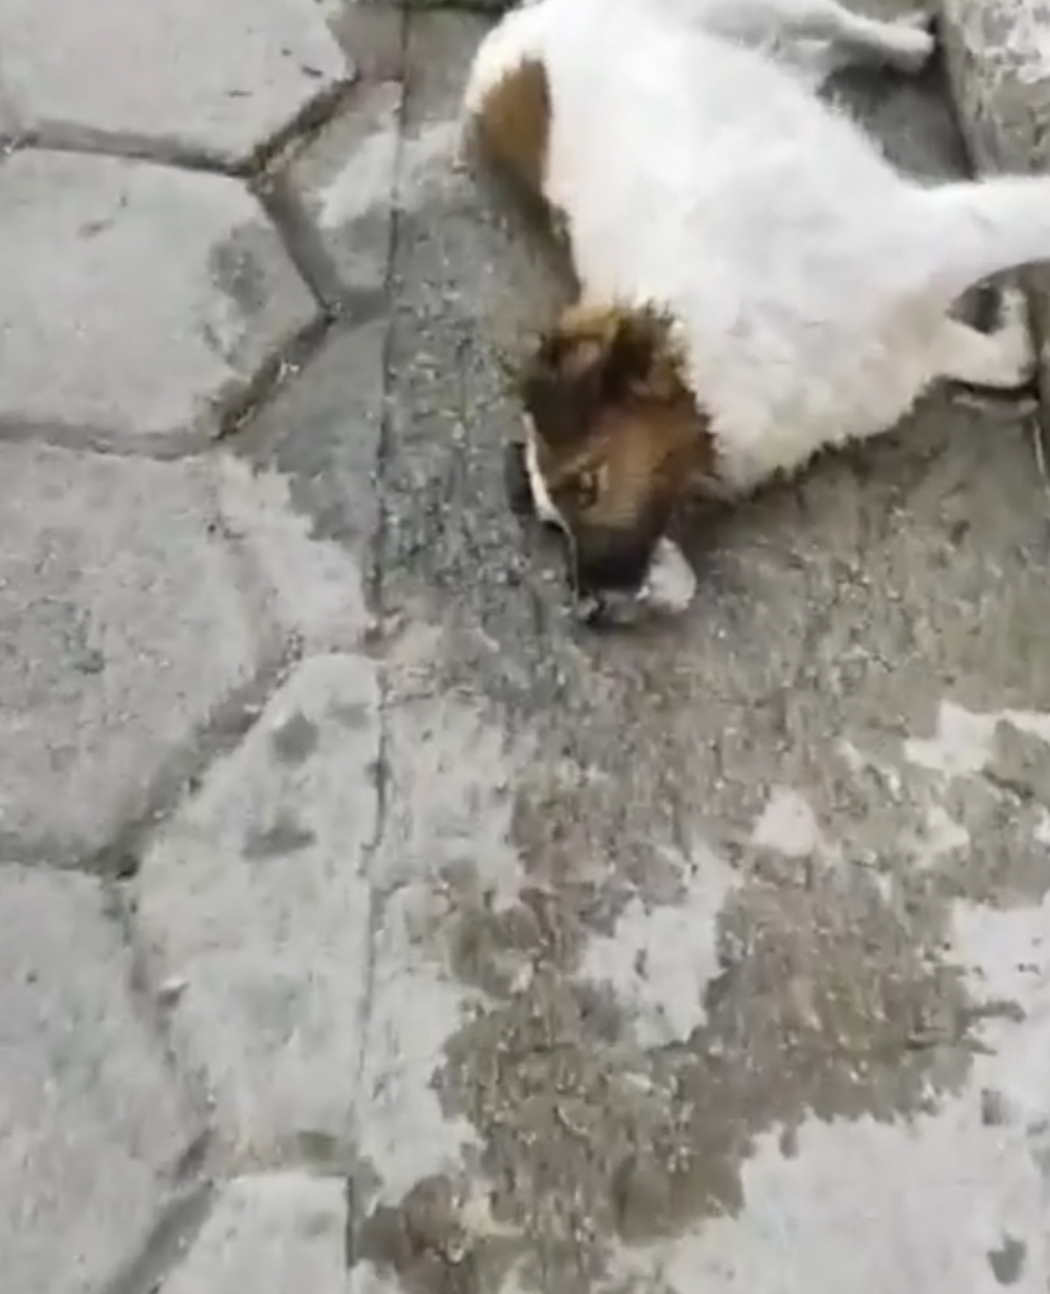 Absurdo: Voltaram a matar cães de rua em Caraí